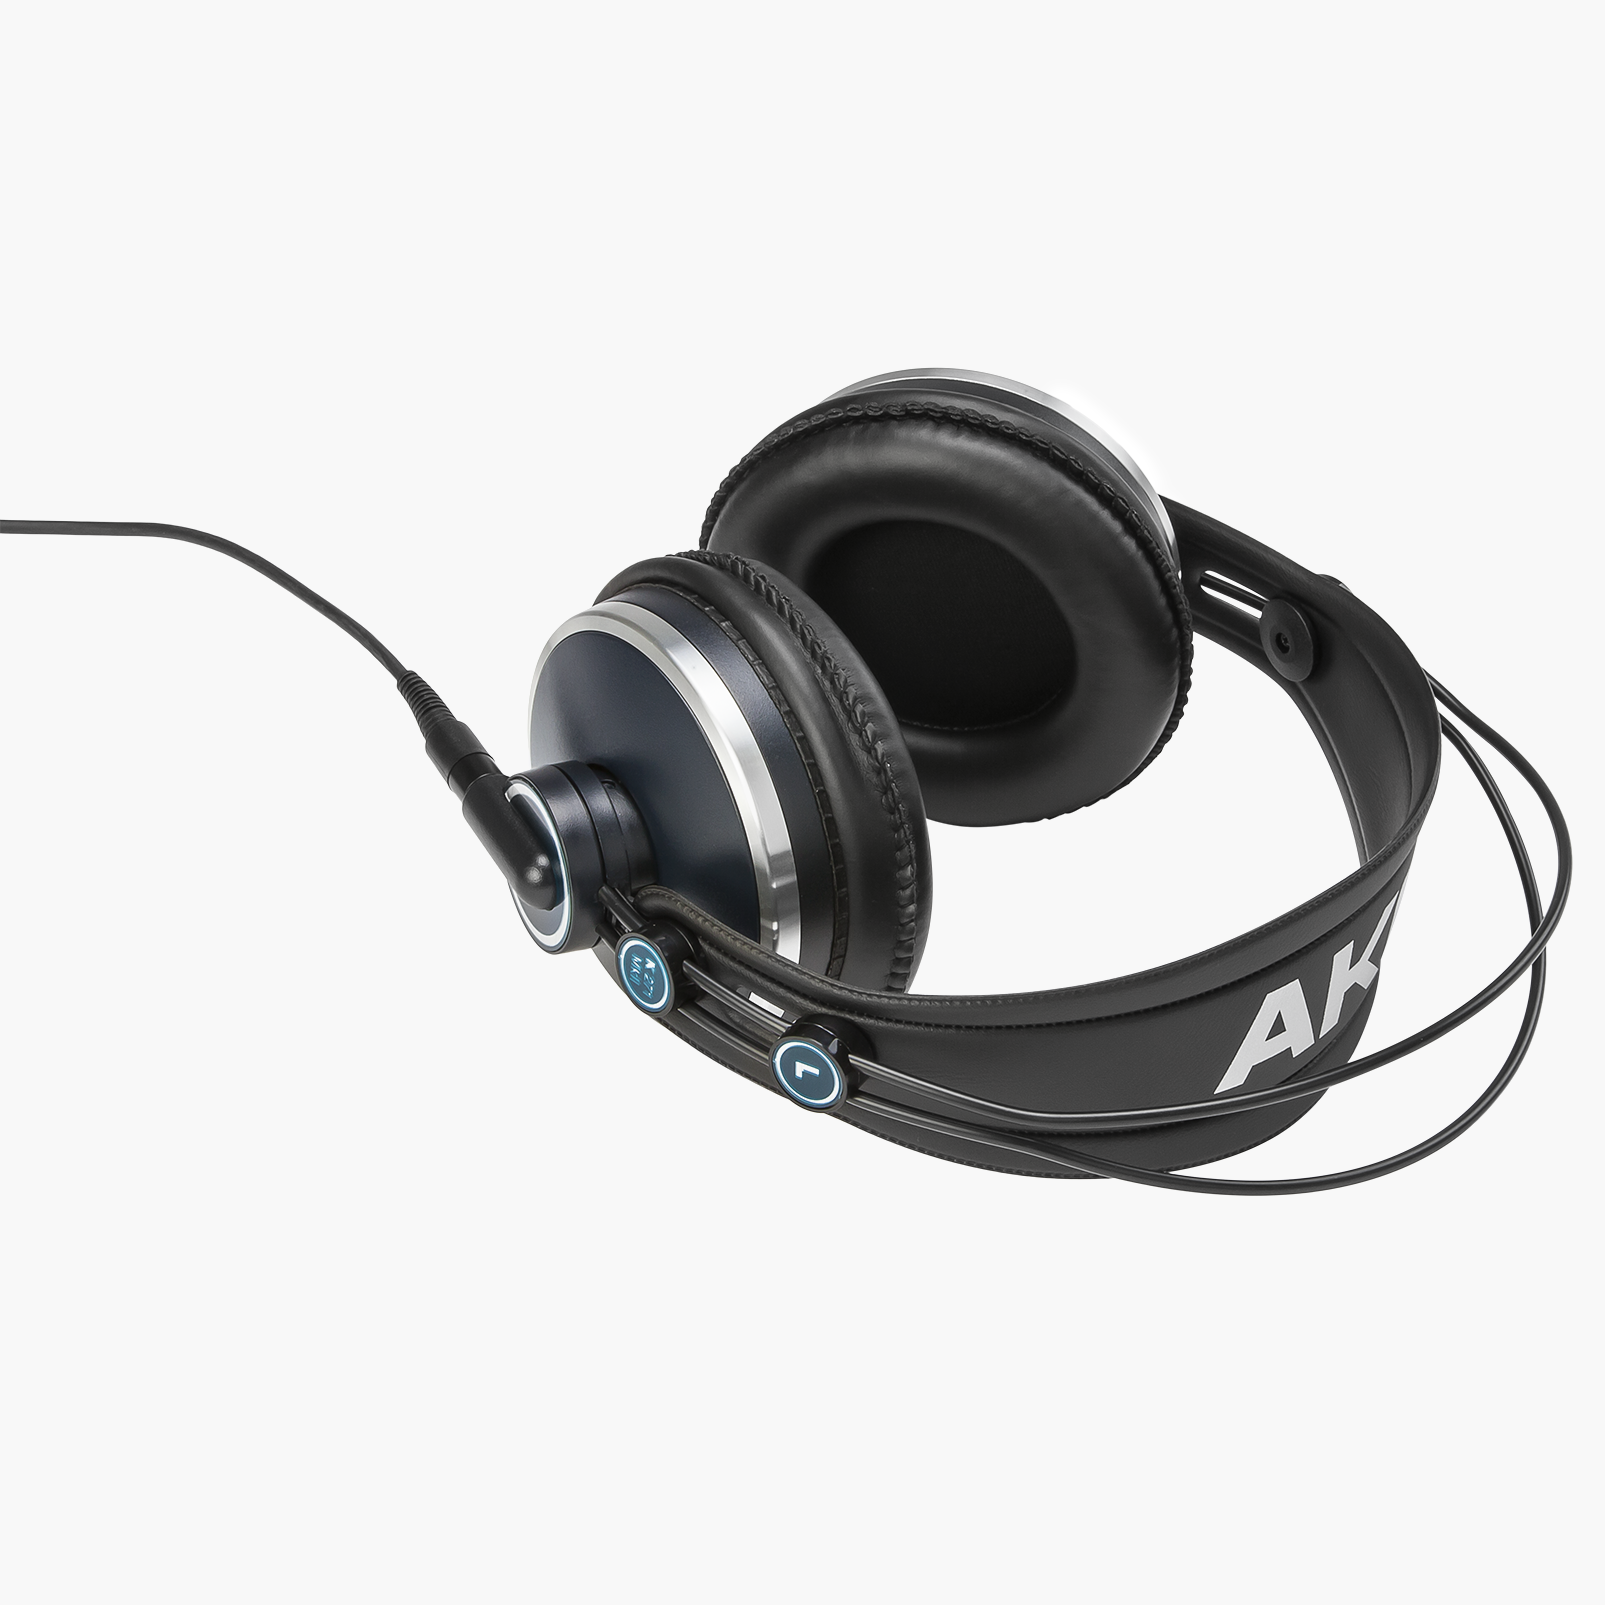 K271 MKII - Black - Professional studio headphones - Detailshot 2